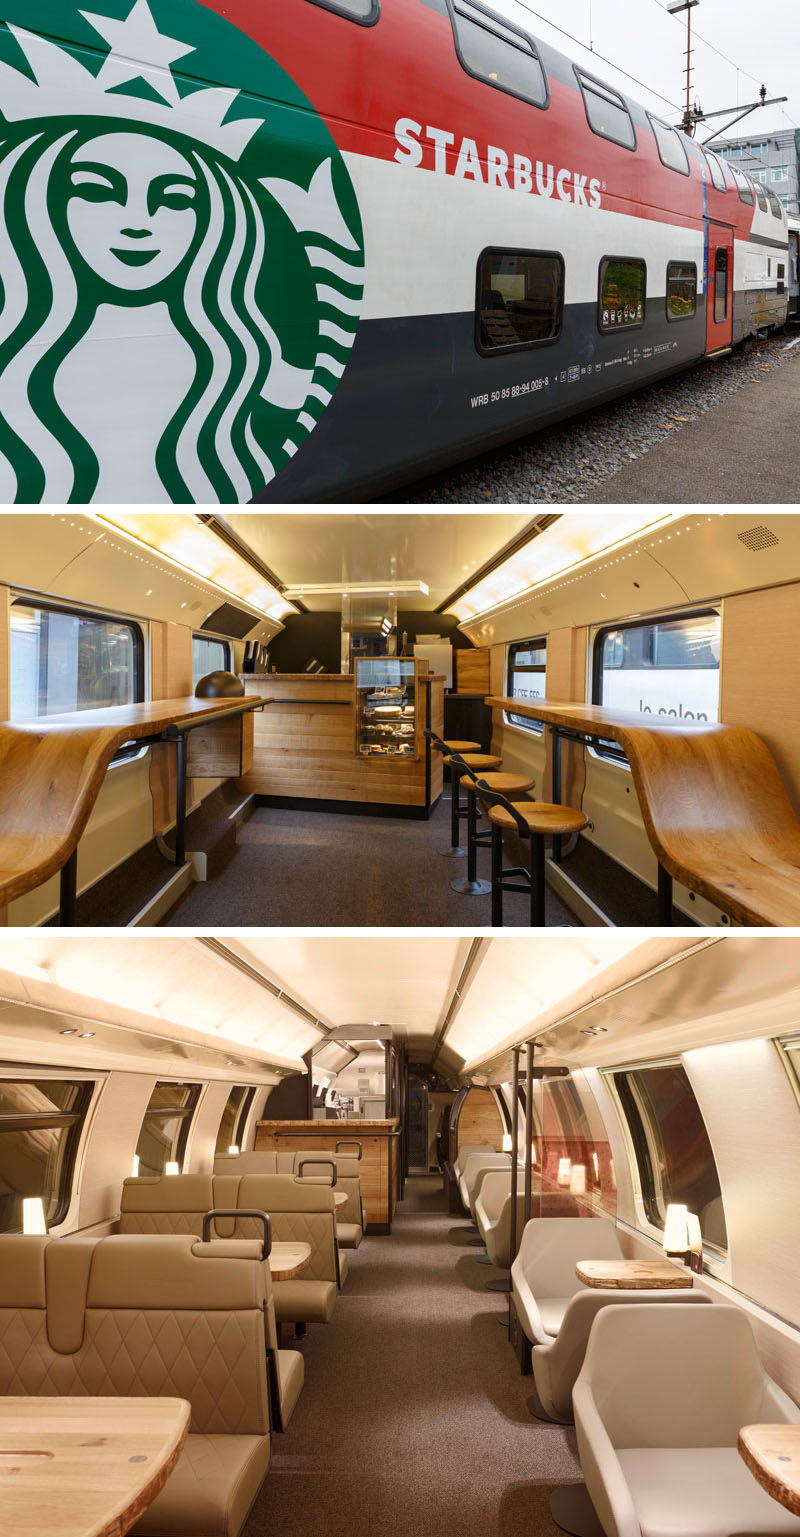 11 кофеен Starbucks со всего мира // Роскошь путешествия на поезде становится еще более роскошной с добавлением двухэтажного вагона Starbucks, в котором есть прогулочный бар с небольшой витриной с едой, а также верхний этаж, в котором поезд водители могут заказать еду и кофе, не вставая с мягких кожаных сидений.